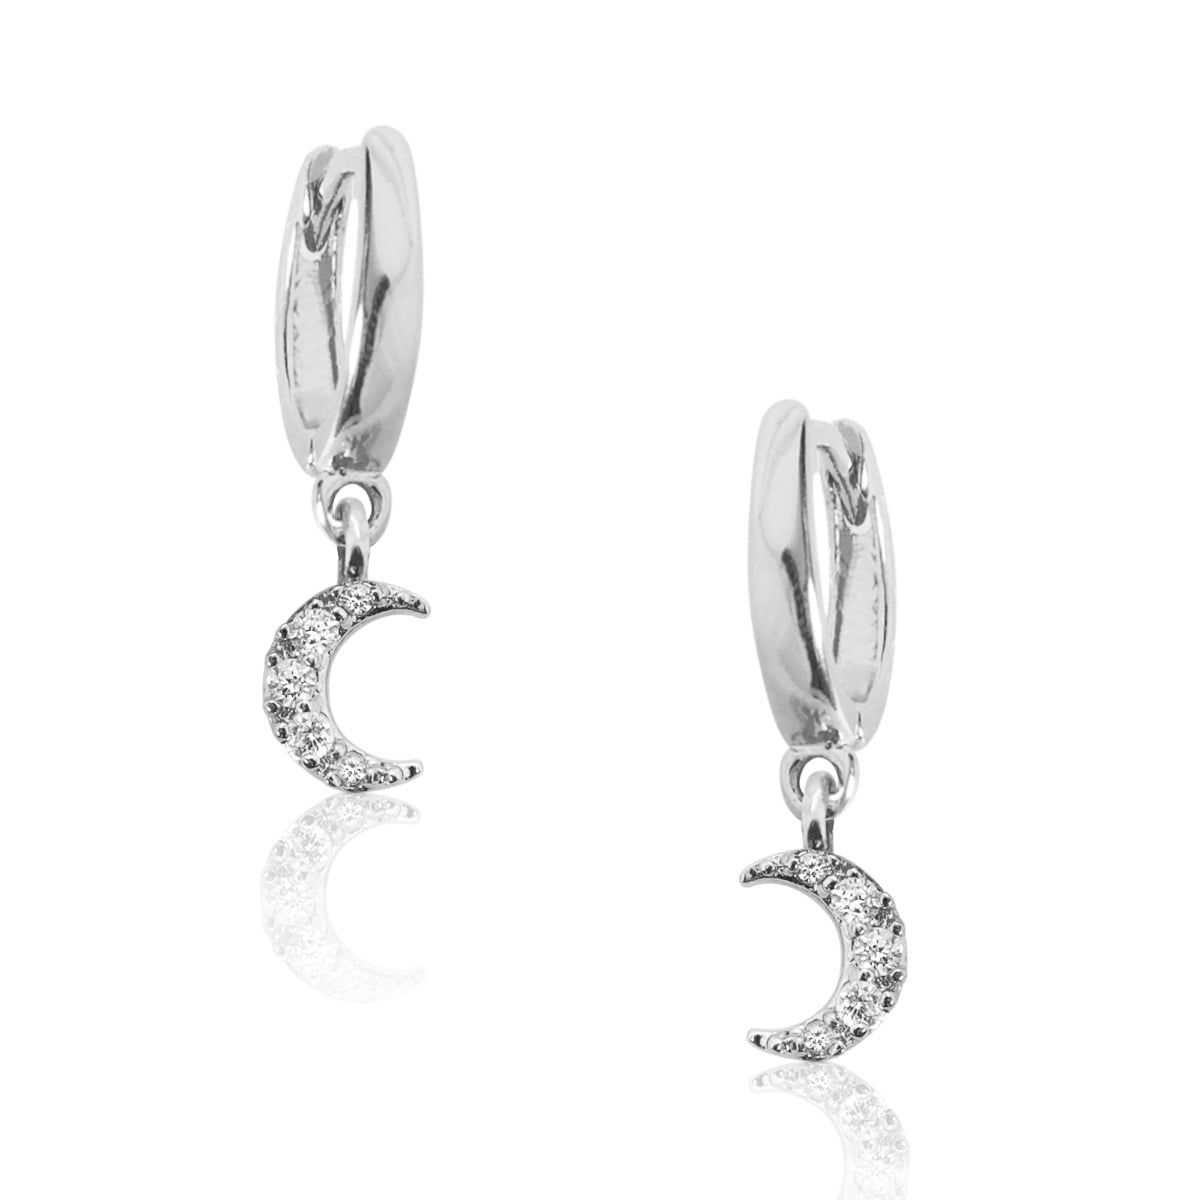 Women's Huggie Earring Fashion 925 Sterling Silver Small Hoop Earring Diamond Cubic Zirconia Cuff Earring Rose Gold Round Dangle Earring Lever Back Drop Earring 